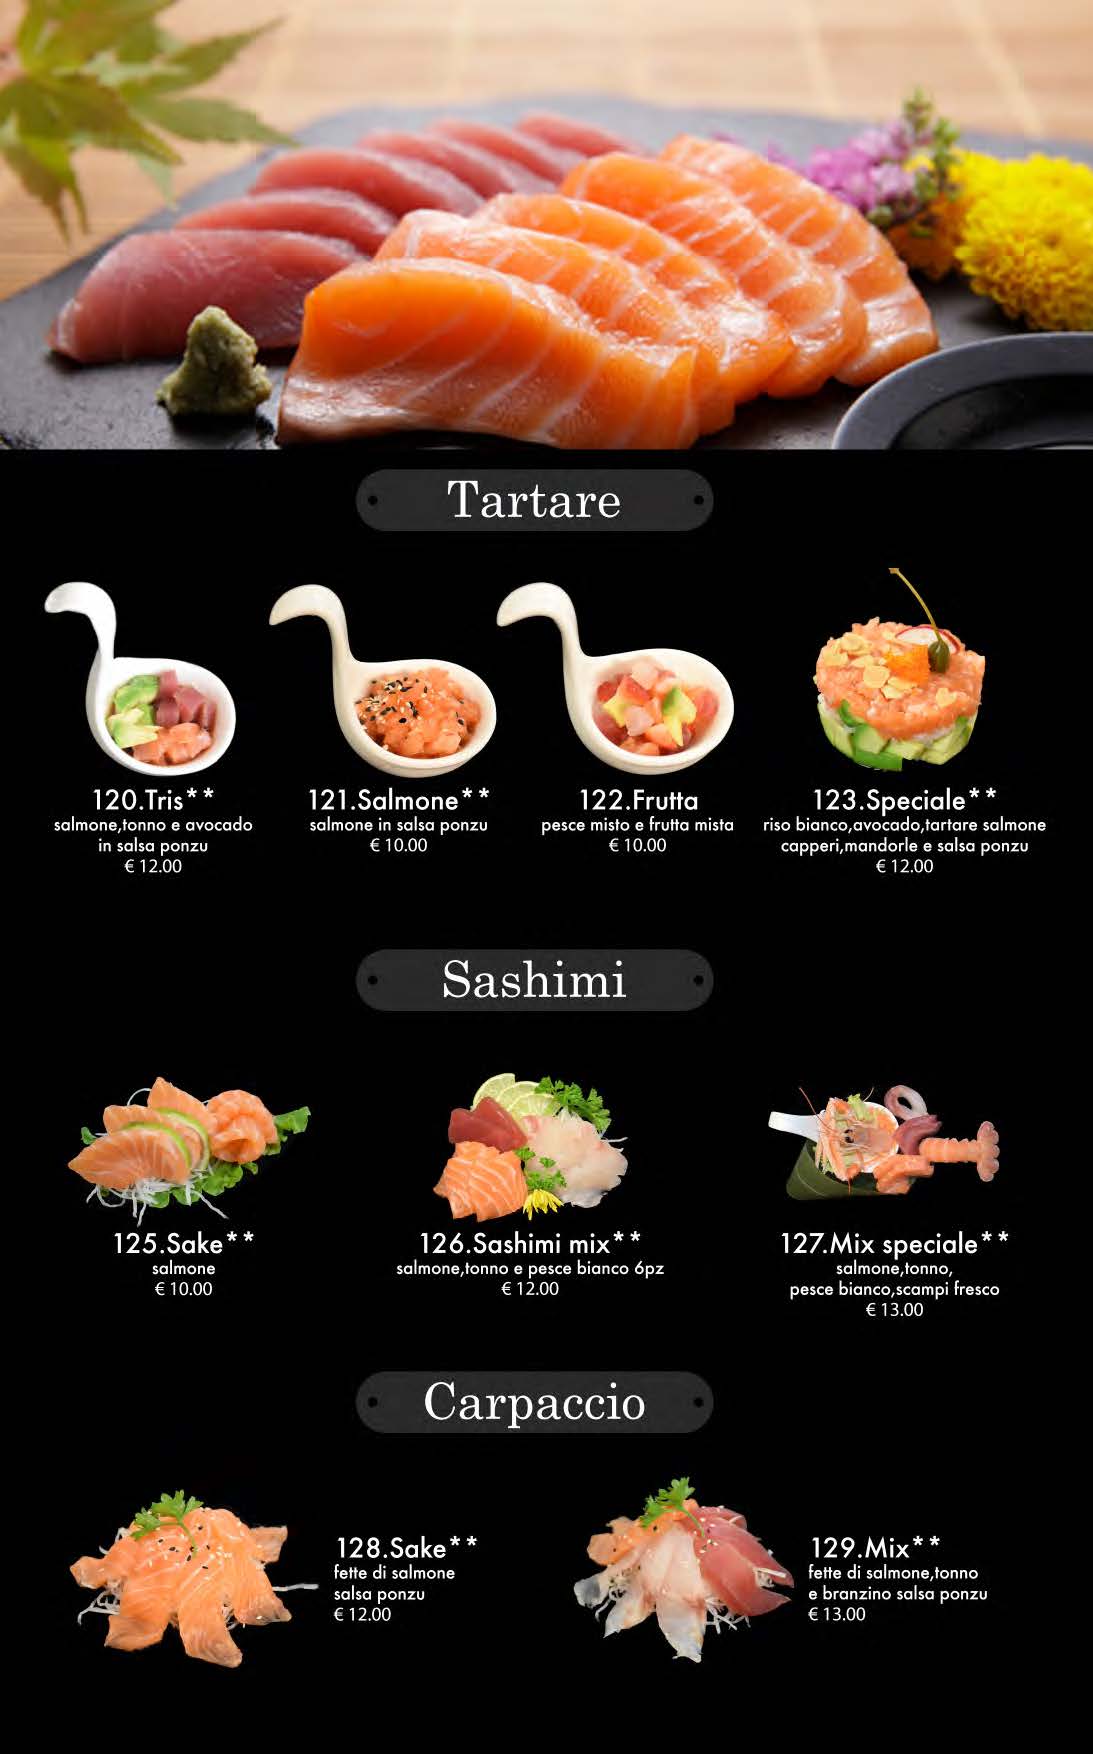 attimi ristorante giapponese padova menù cena pagina 12 tartare sashimi carpaccio